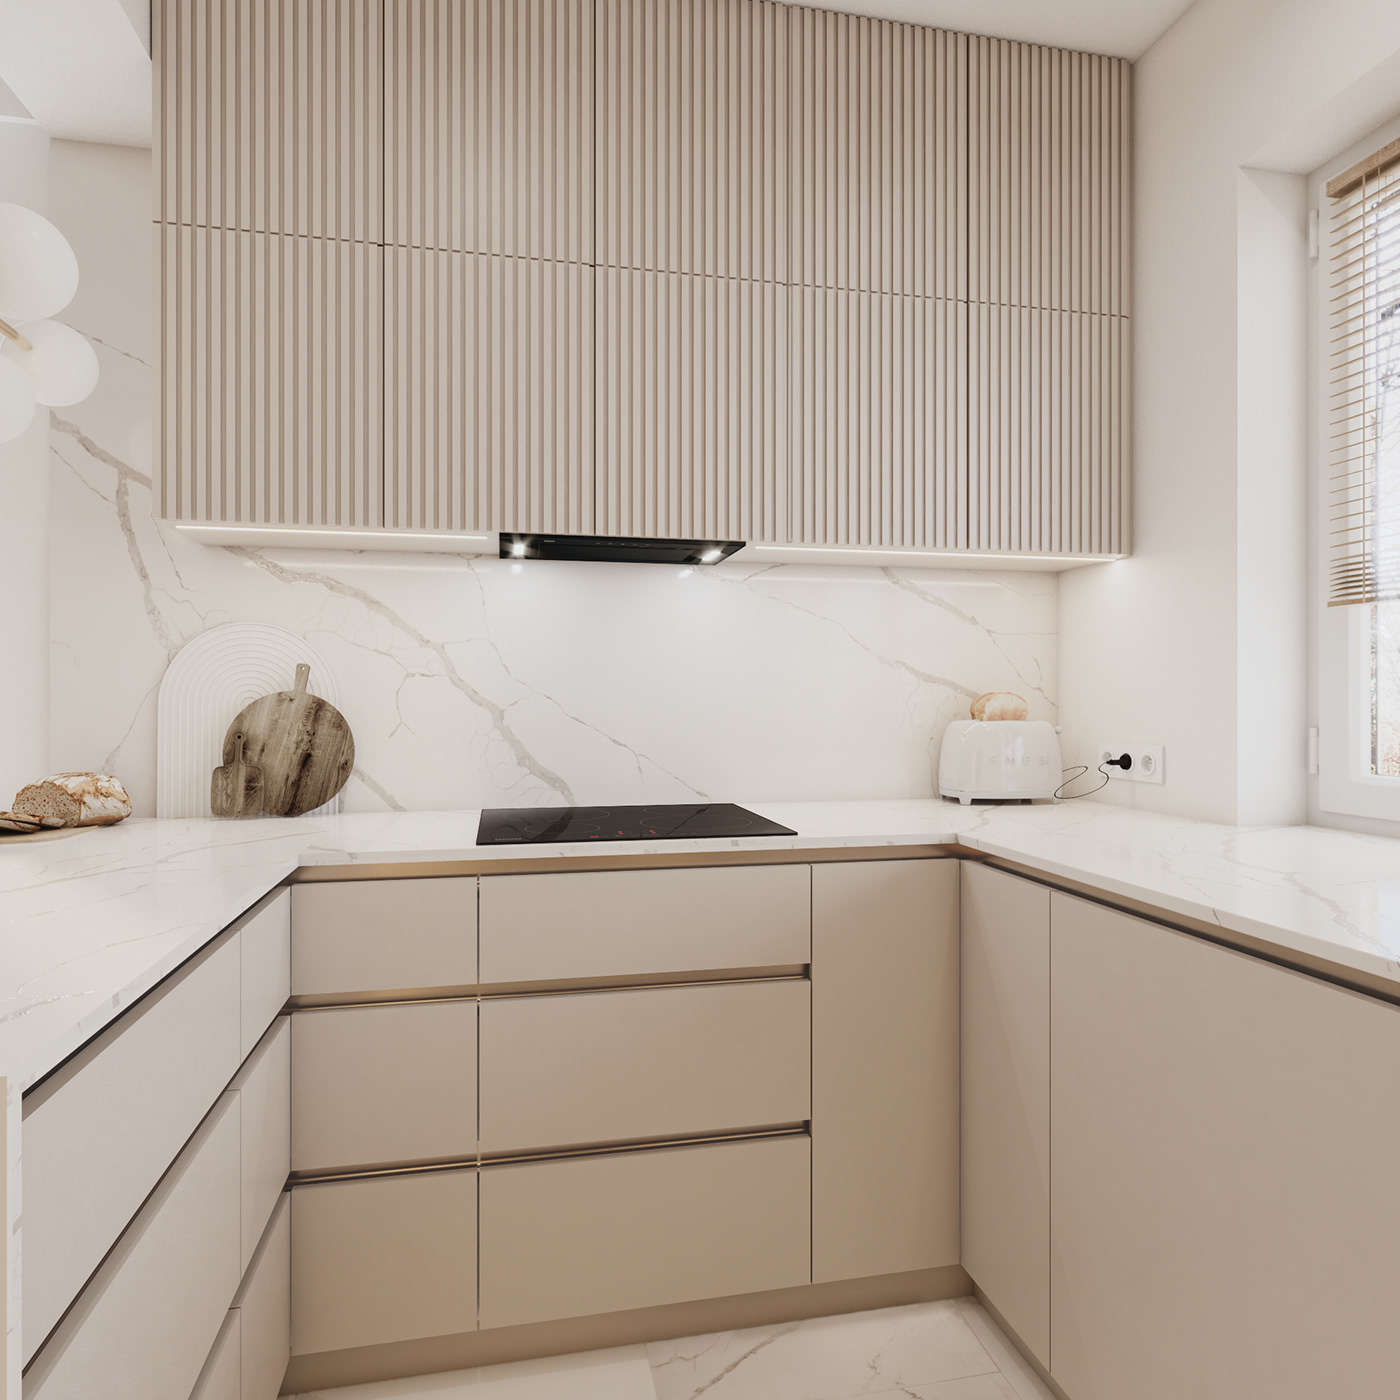 kitchen interiordesign Render visualization interior design  modern kitchendesign